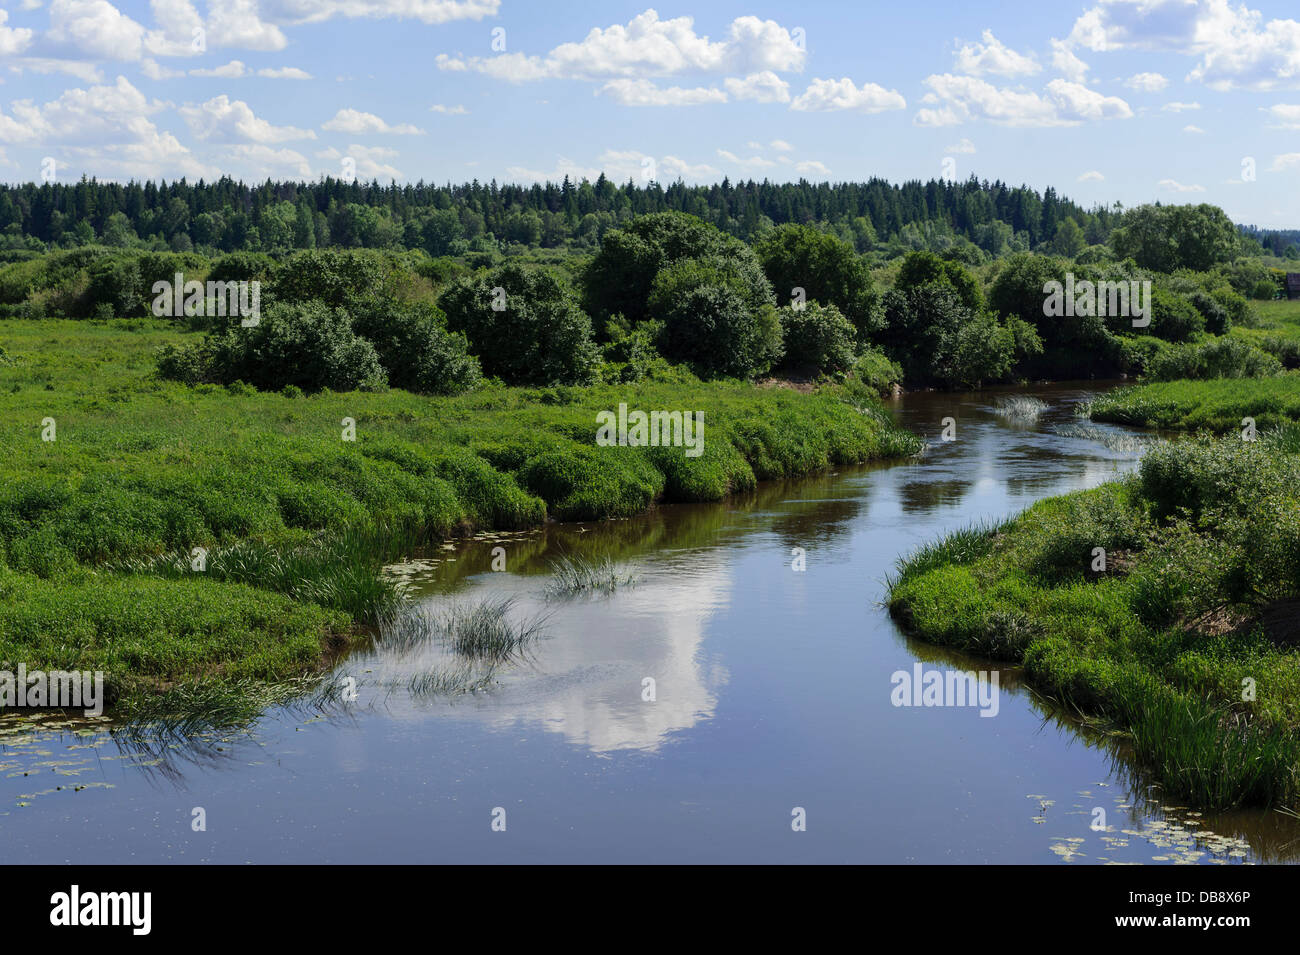 River Abava near Kandava, Latvia, Europe Stock Photo